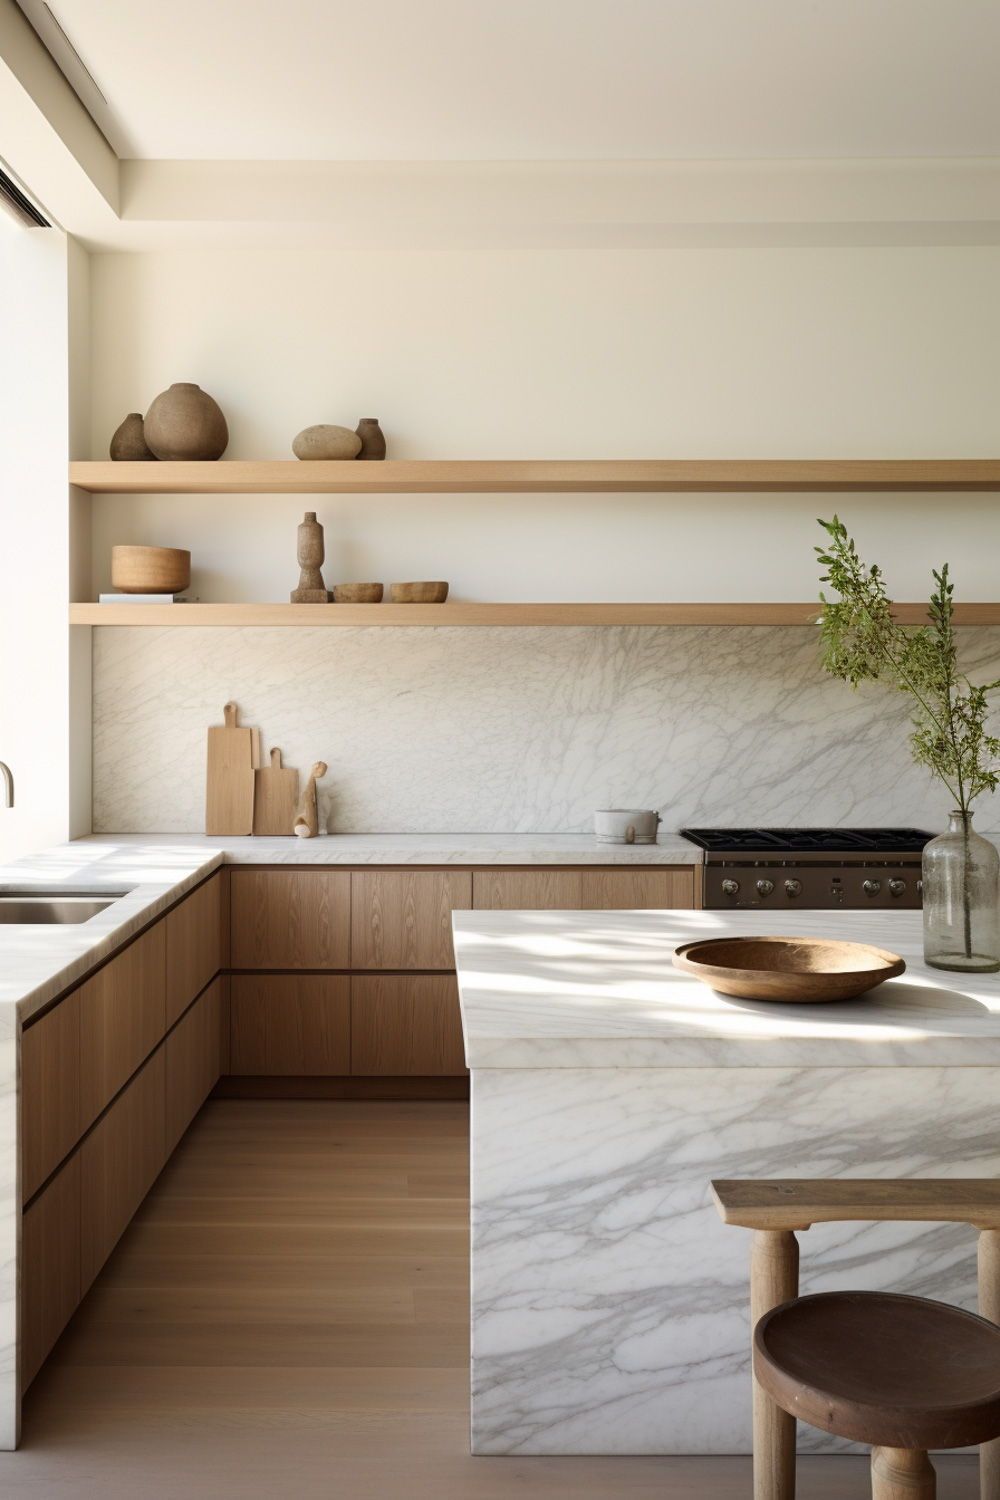 Kitchen Design : Top Trends in Modern Kitchen Design for 2021